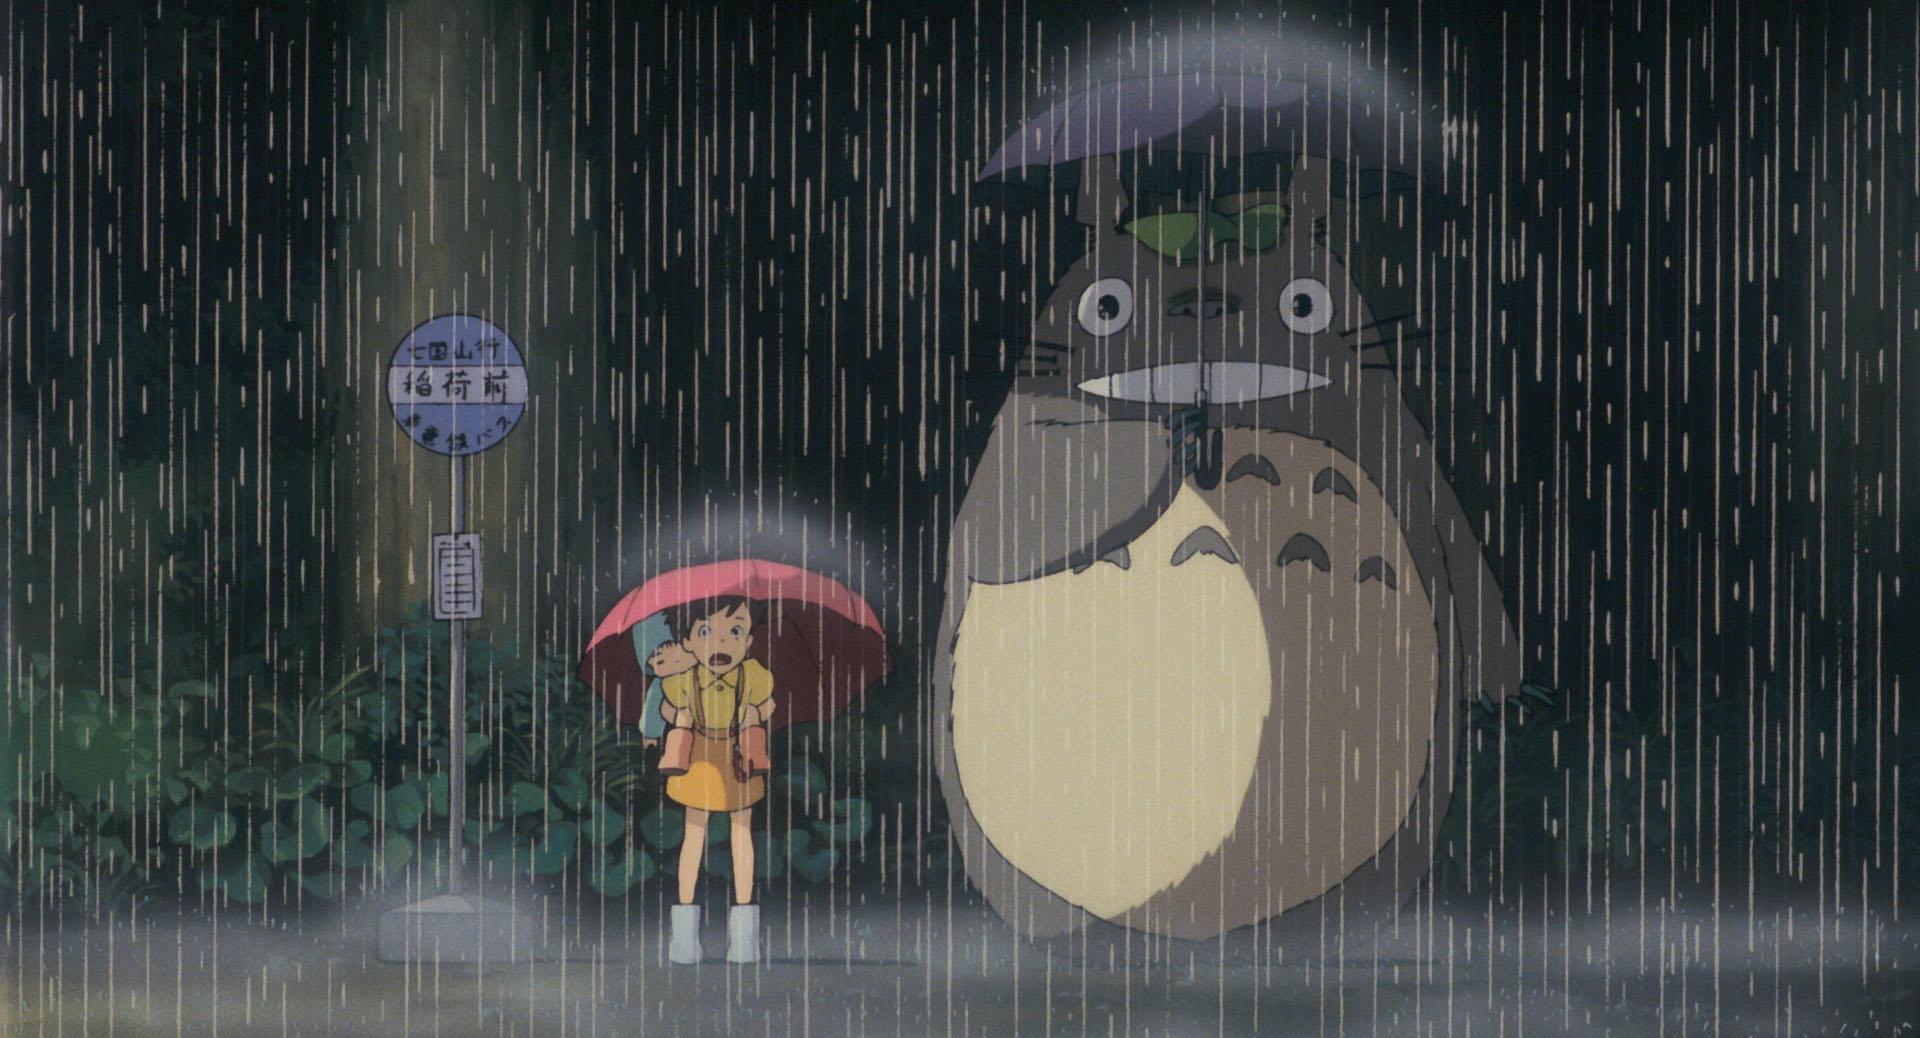 Obras do Studio Ghibli chegarão à Netflix em fevereiro - Meio Bit